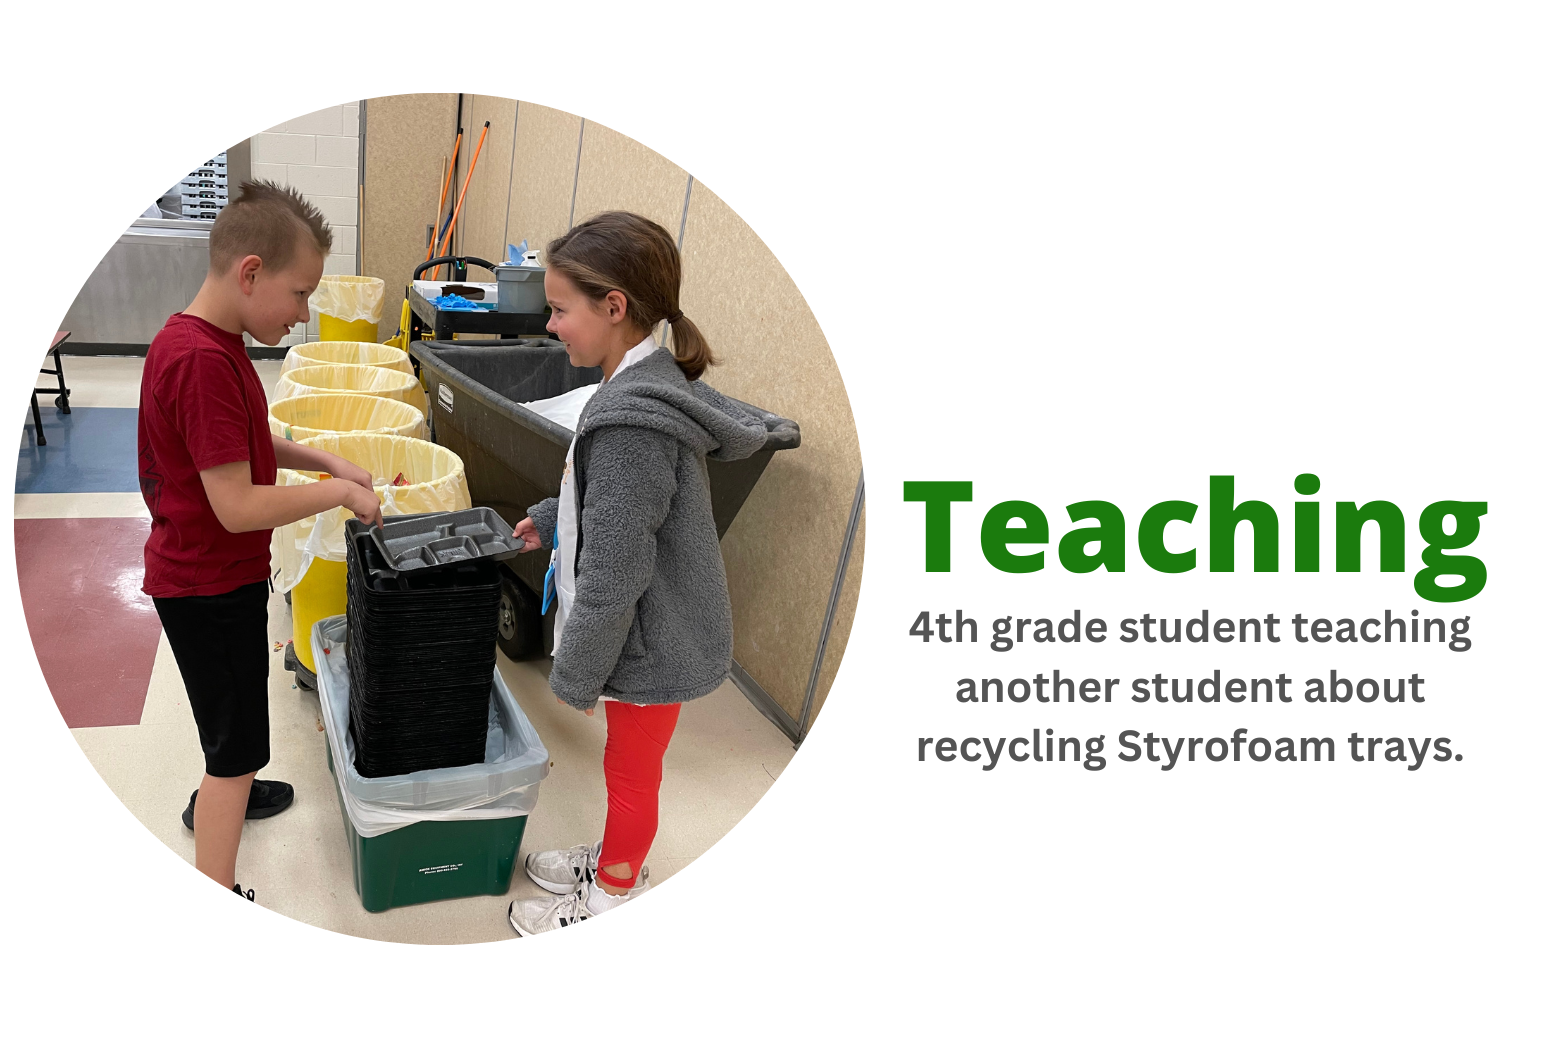 Teaching - Recycling